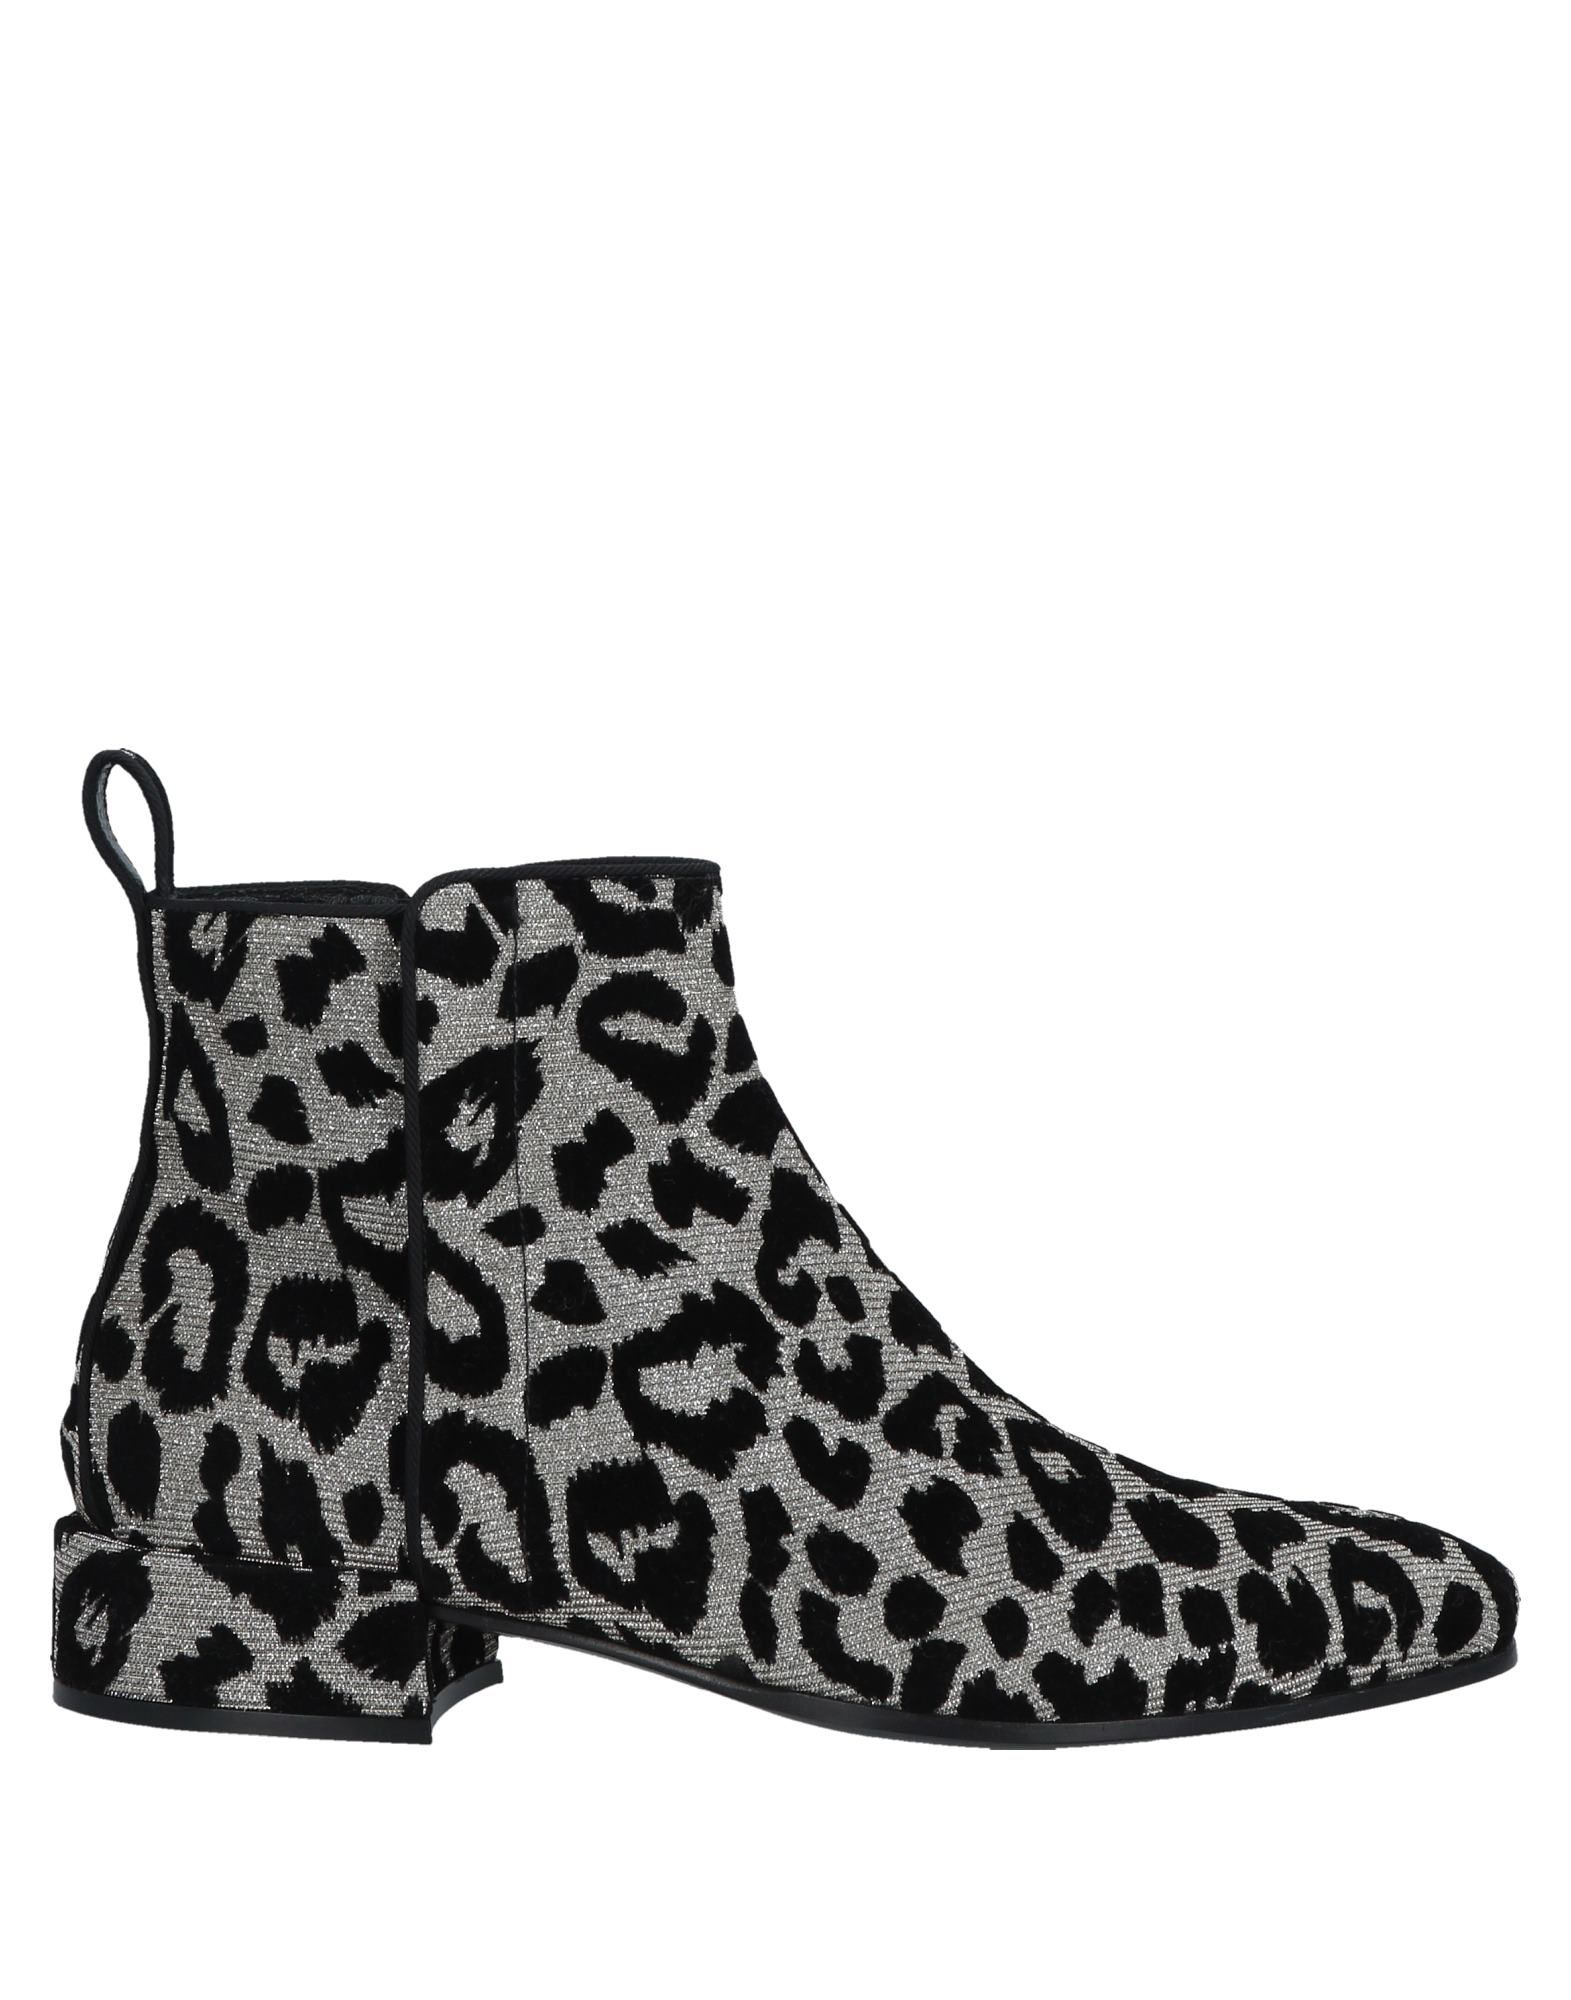 dolce gabbana leopard boots